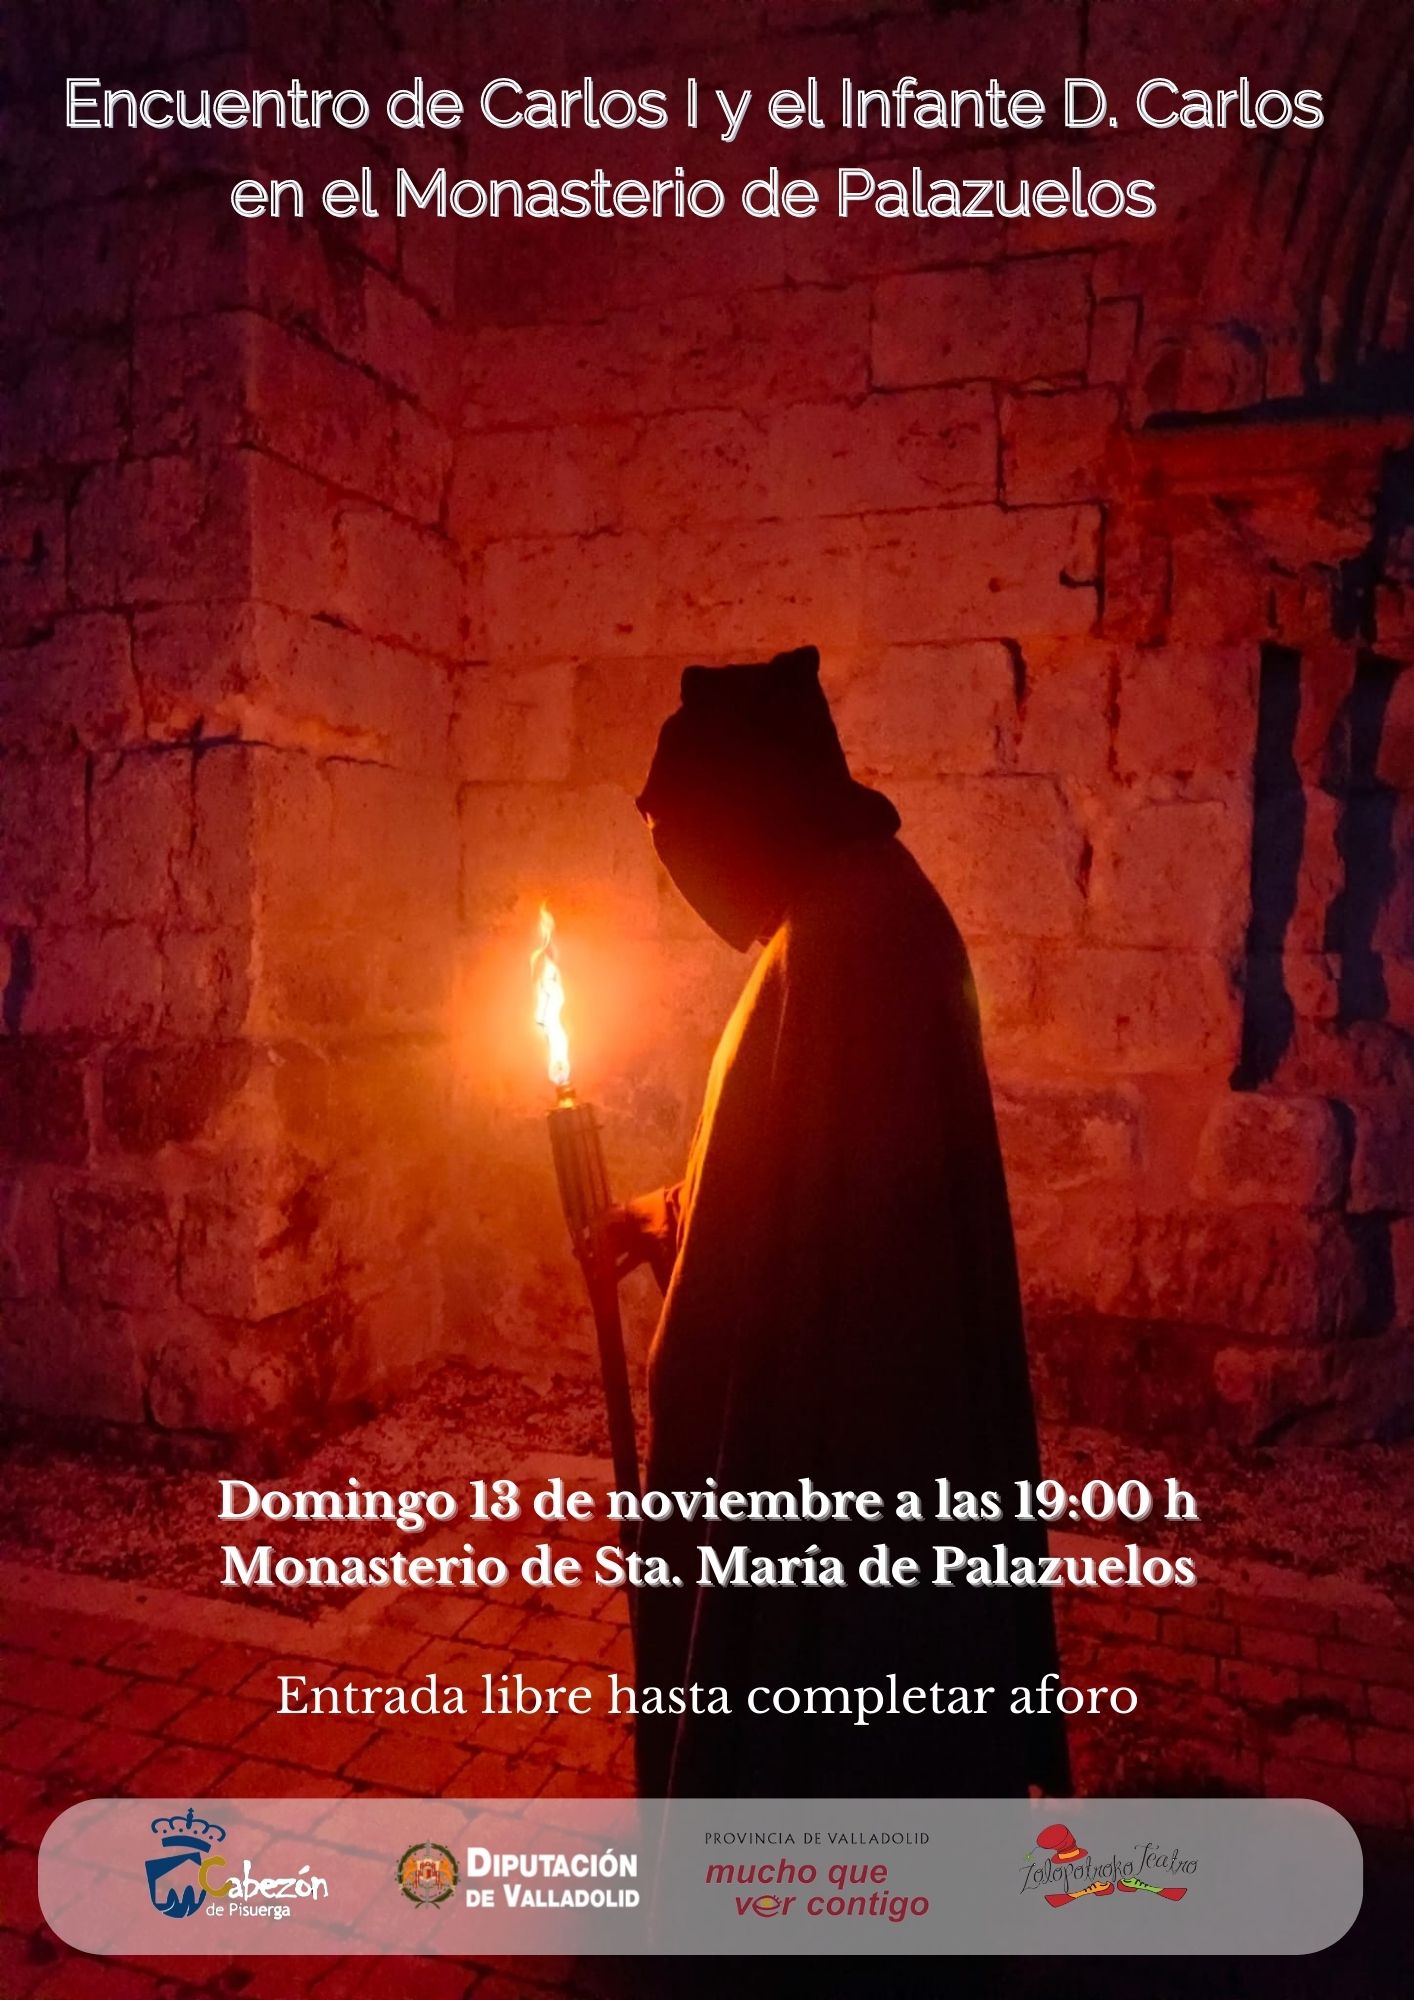 Hablamos del Tenorio. Conferencia teatralizada. Sábado 5 de noviembre en el Monasterio de Palazuelos.